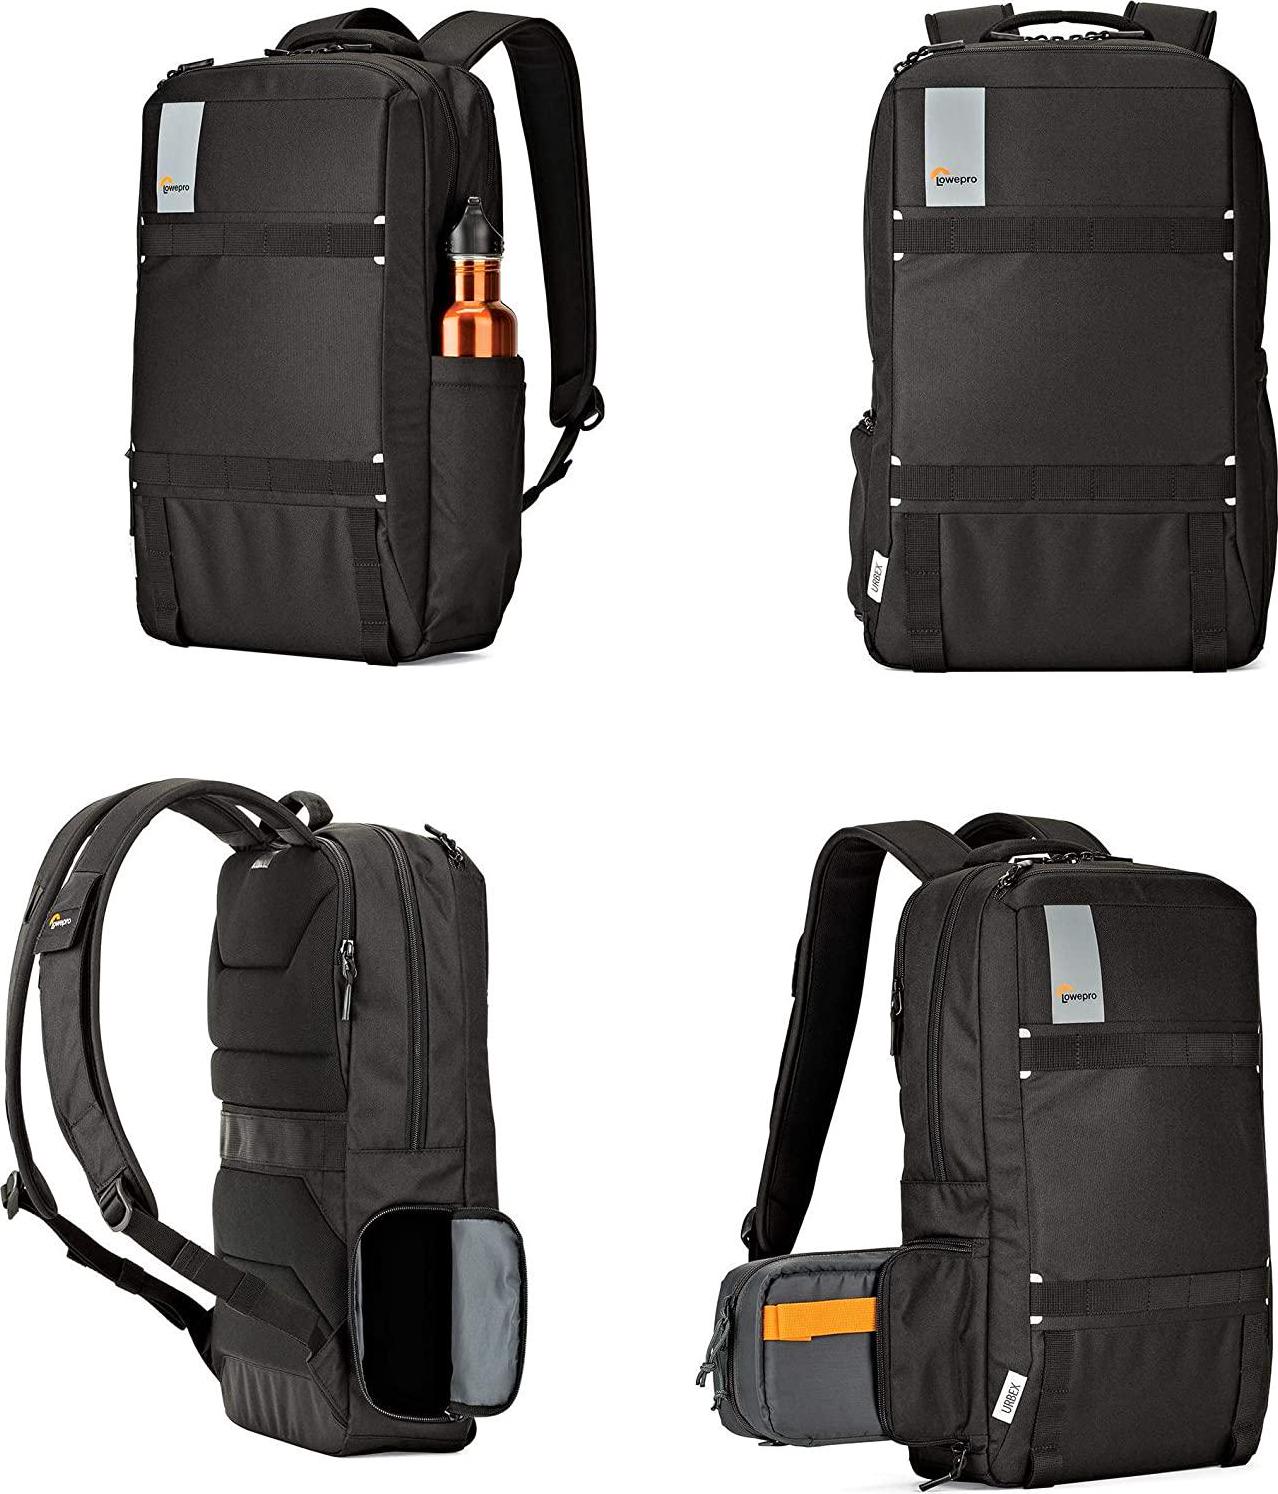 Lowepro, Lowepro Slim Backpack URBEX BP 20L, Slim Laptop Backpack, Black (LP37106-PWW)